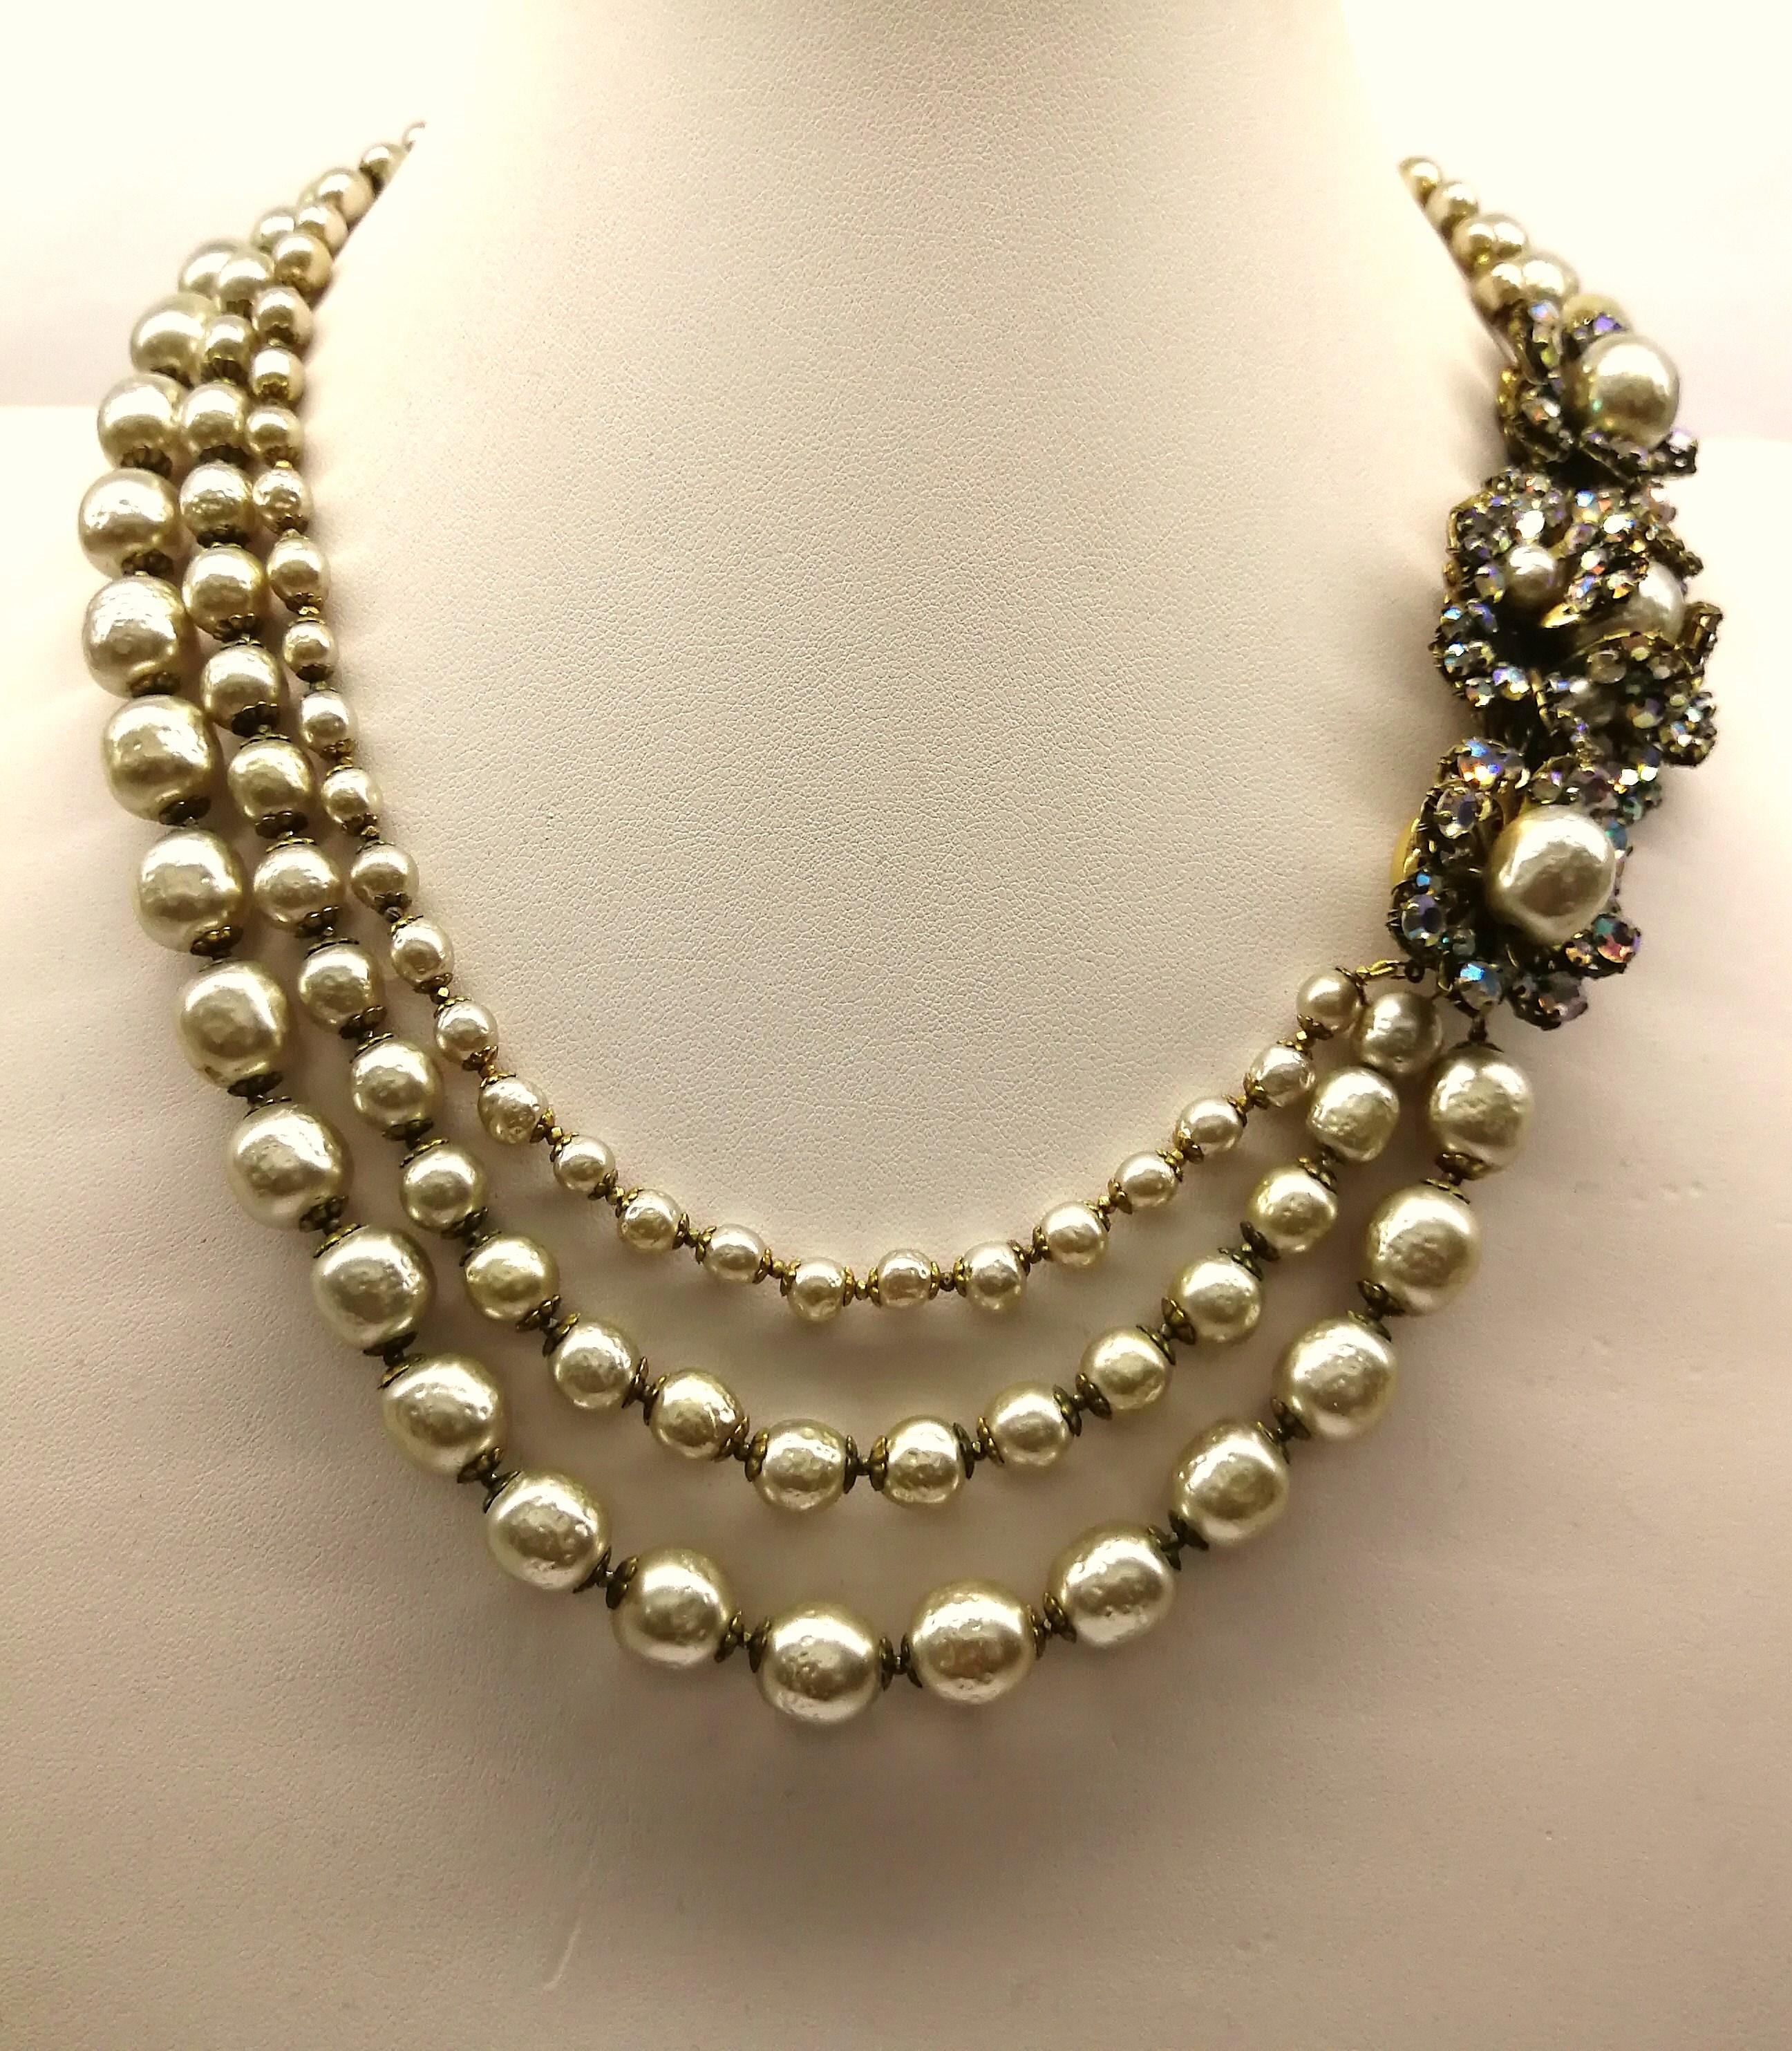 Klassische Perlen! 
Eine wunderschöne und sehr tragbare Halskette von Miriam Haskell. 
Die weichen:: abwechslungsreichen Mischtöne der schillernden „Rose Montes“ und die schöne „Champagner“-Farbe der abgestuften Barockperlen verleihen dieser